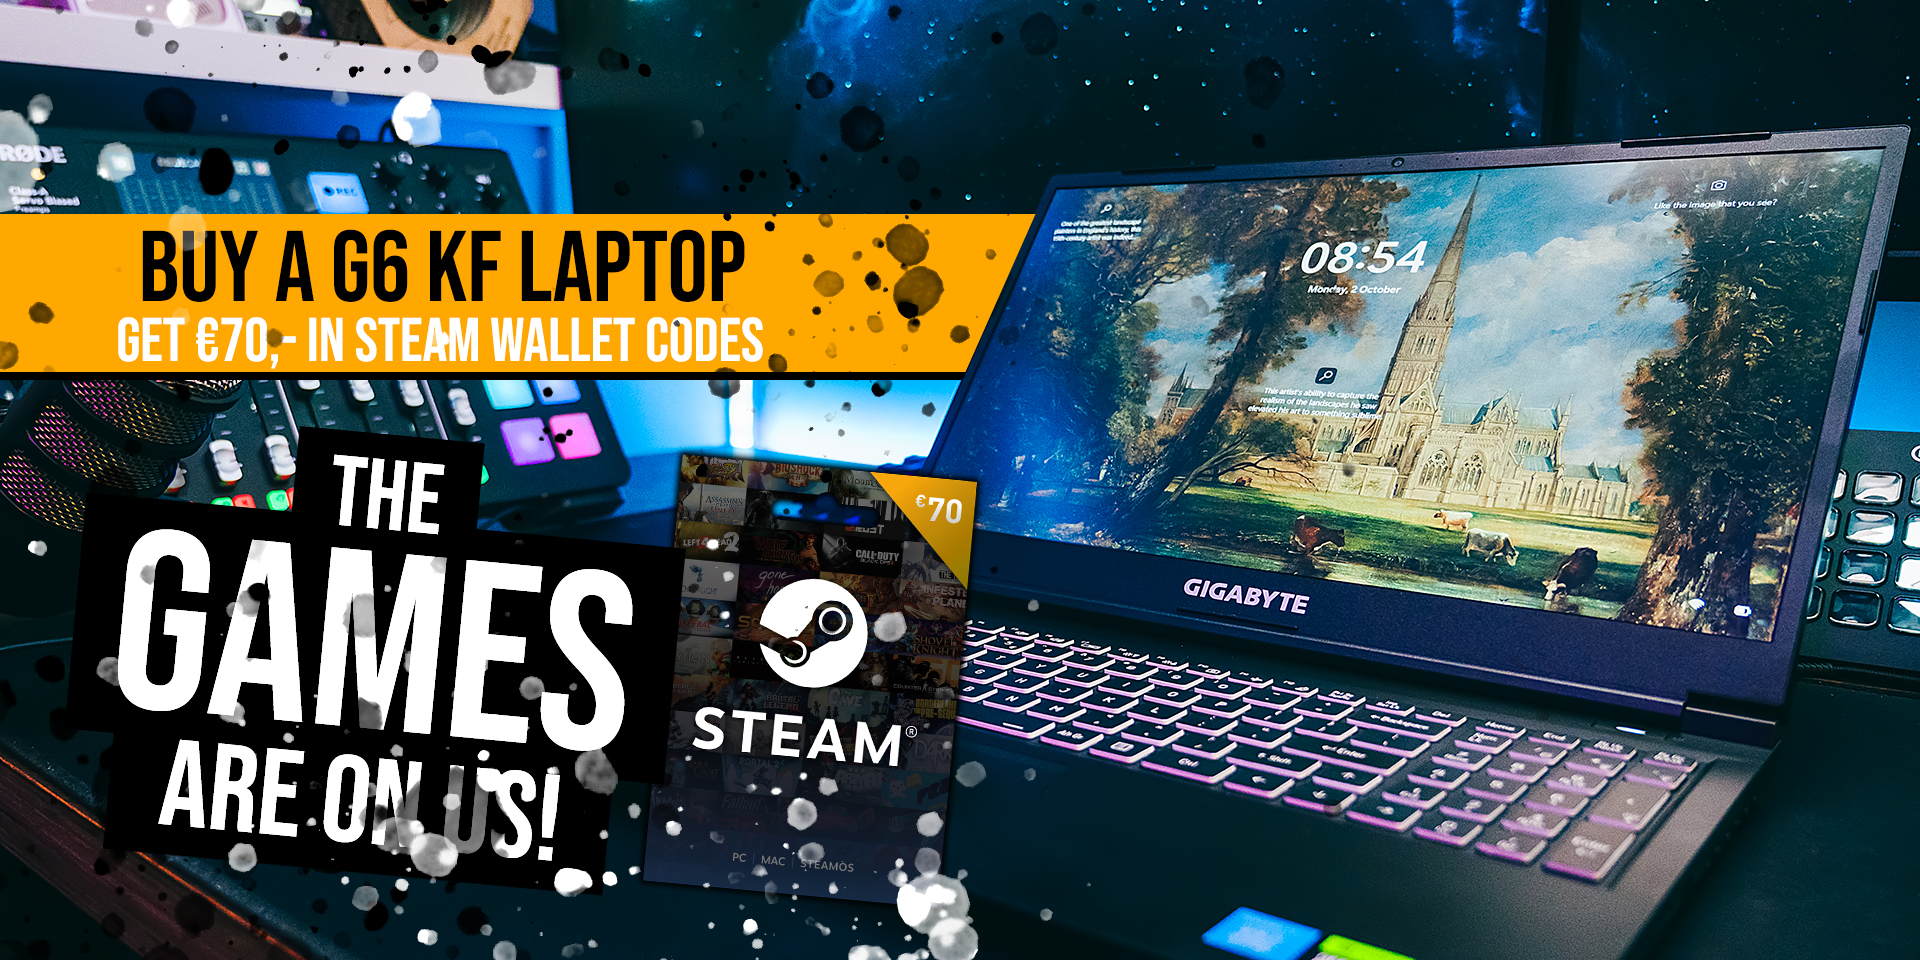 The games are on us! - Koop een G6 KF laptop en krijg €70,- Steam tegoed